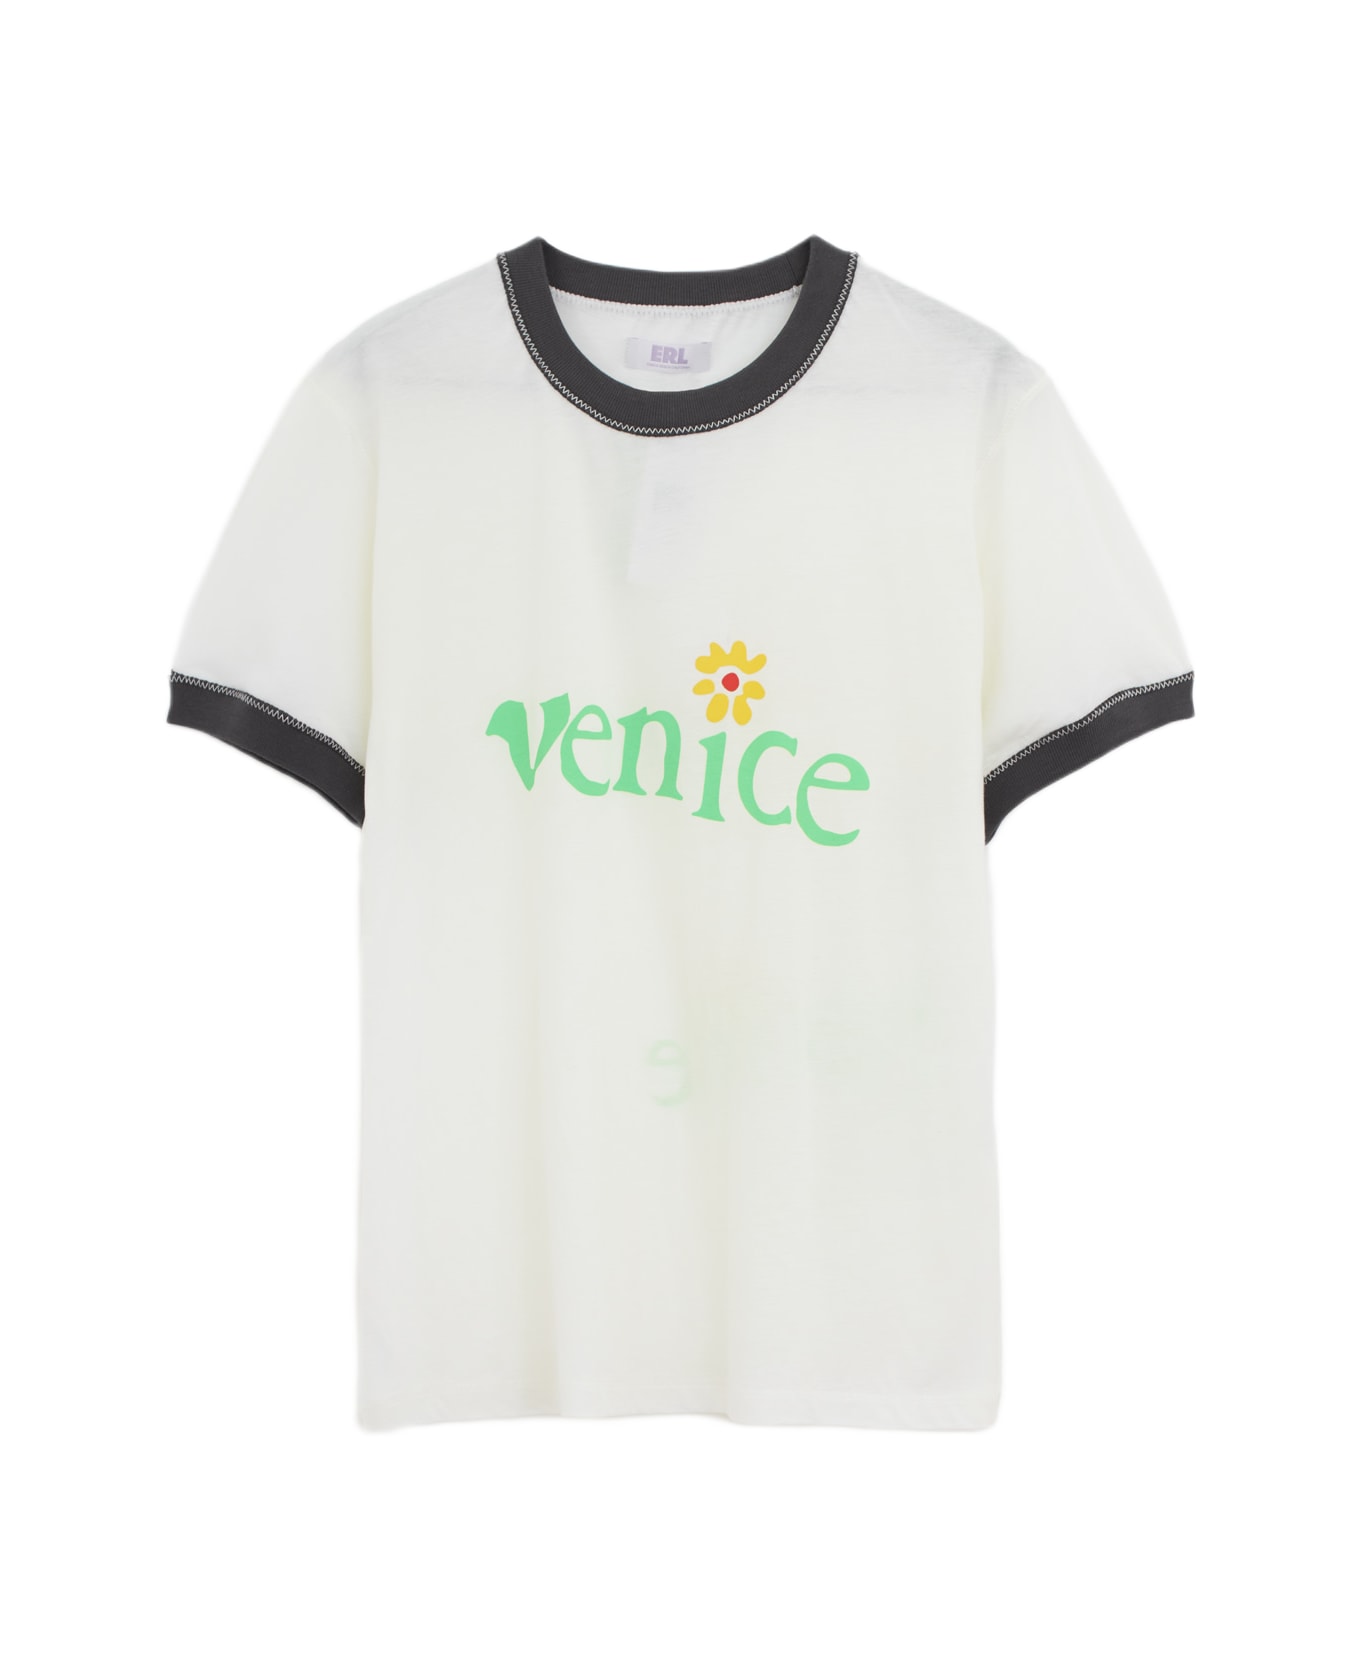 ERL Venice Tshirt T-shirt - white